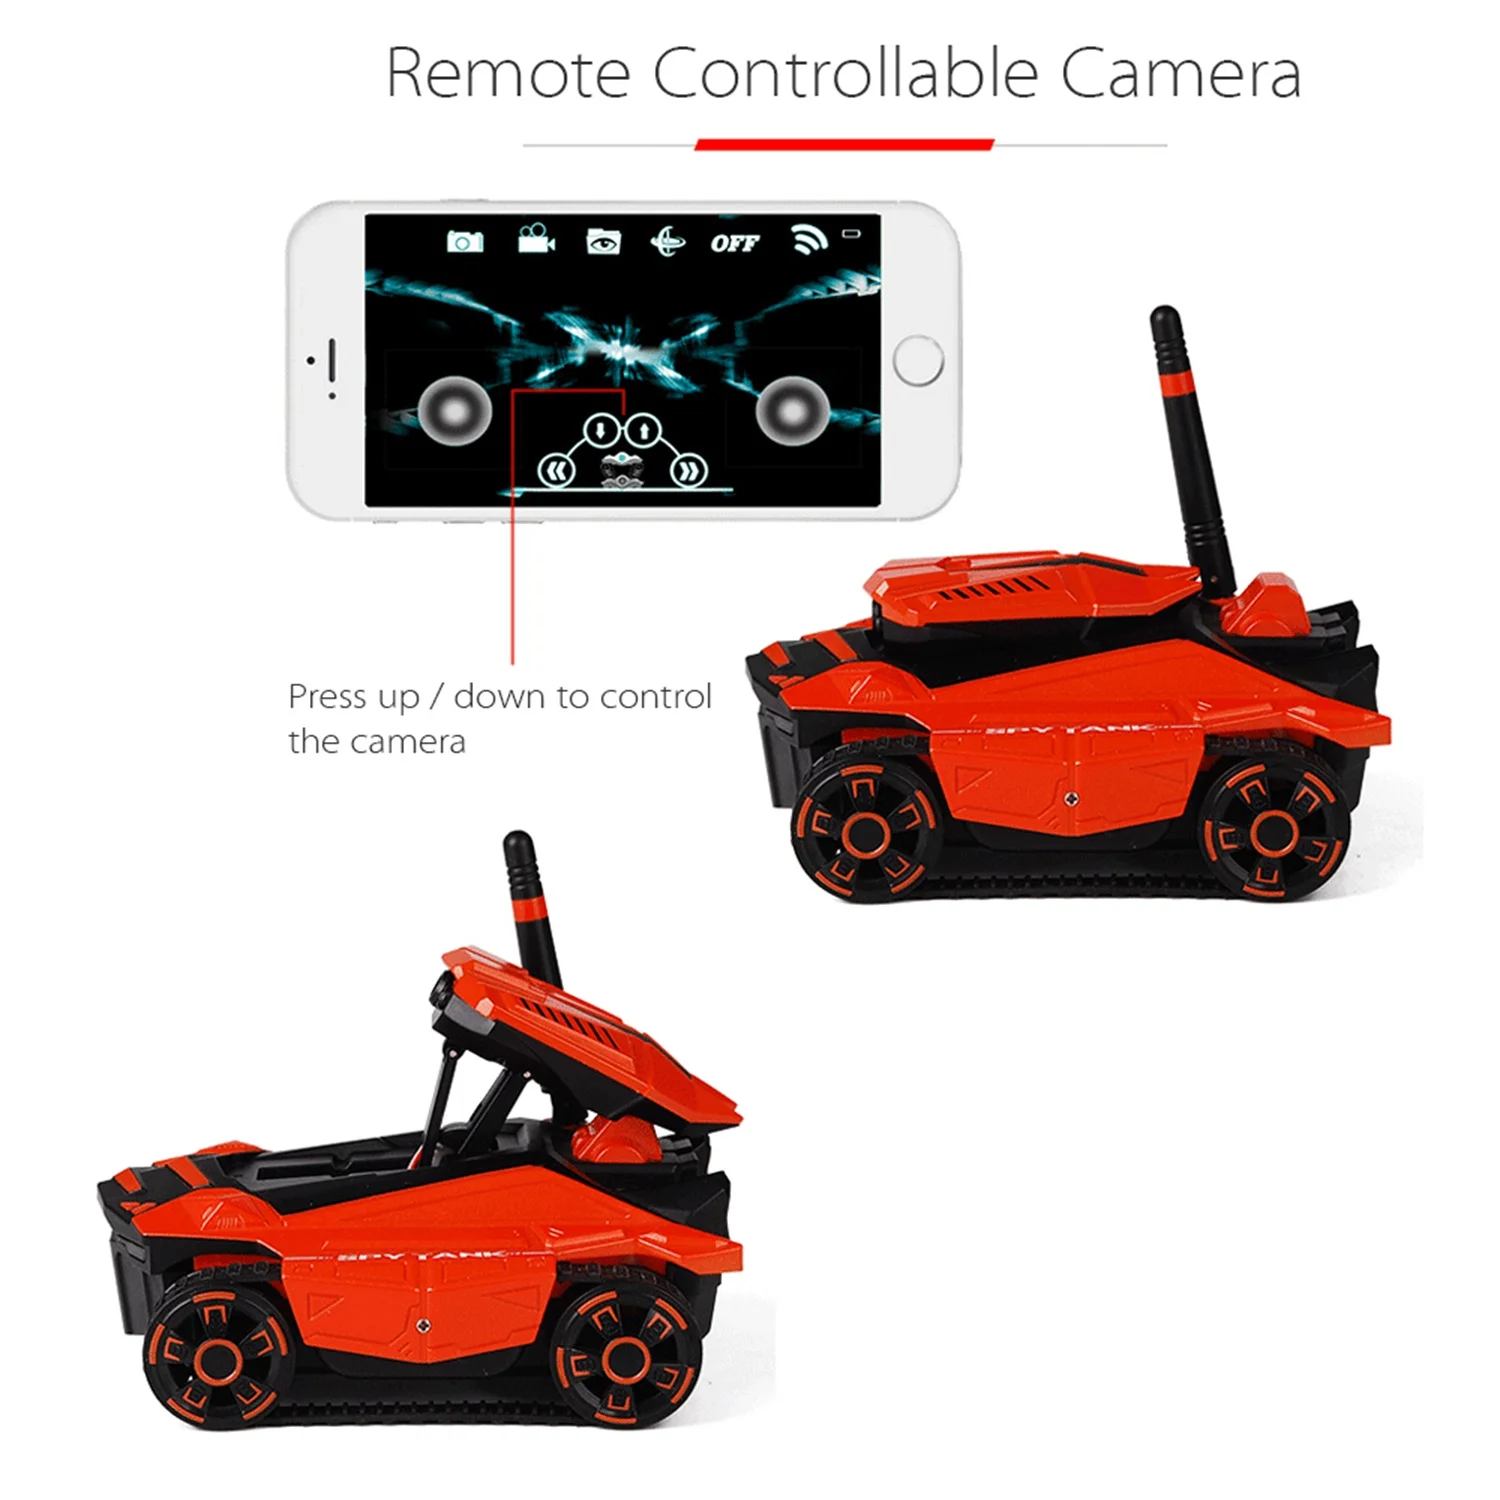 Attop Rc Танк с Hd камерой Wifi Fpv 0.3Mp камера приложение пульт дистанционного управления Танк Rc игрушка телефон Управление светодиодный робот